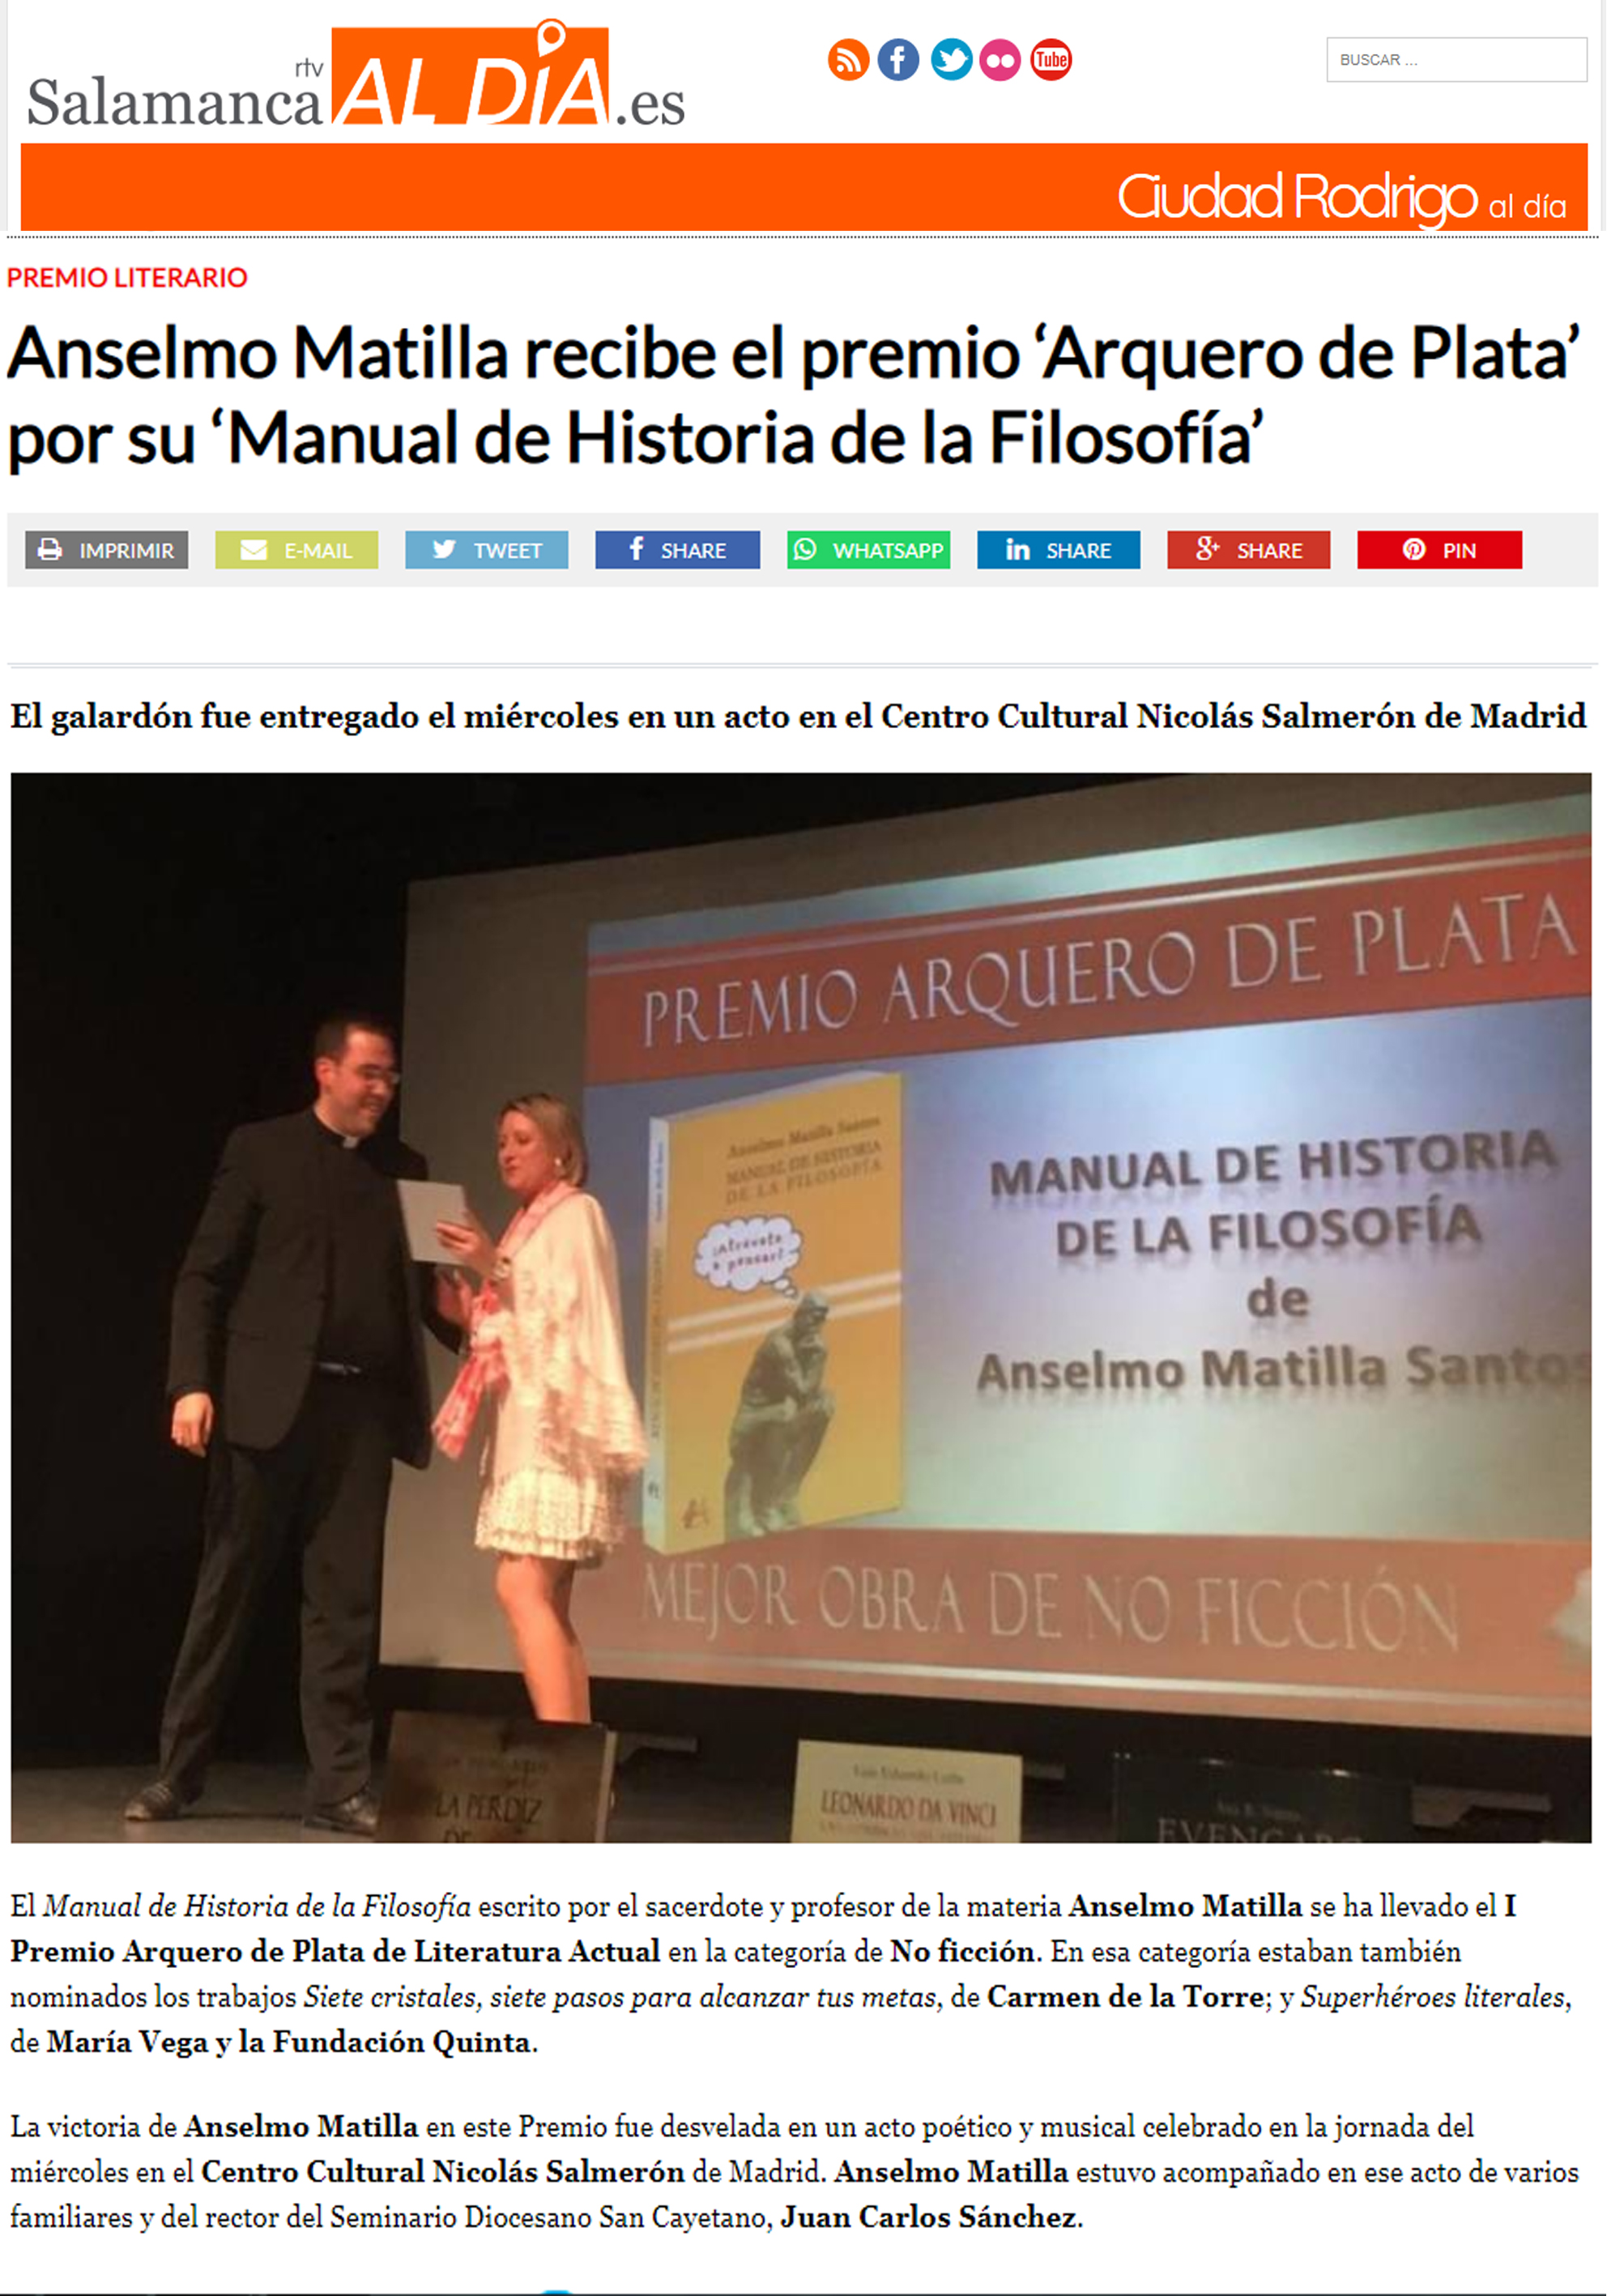 Anselmo Matilla Santos en Salamanca RTV. Editorial Adarve, Editoriales de España